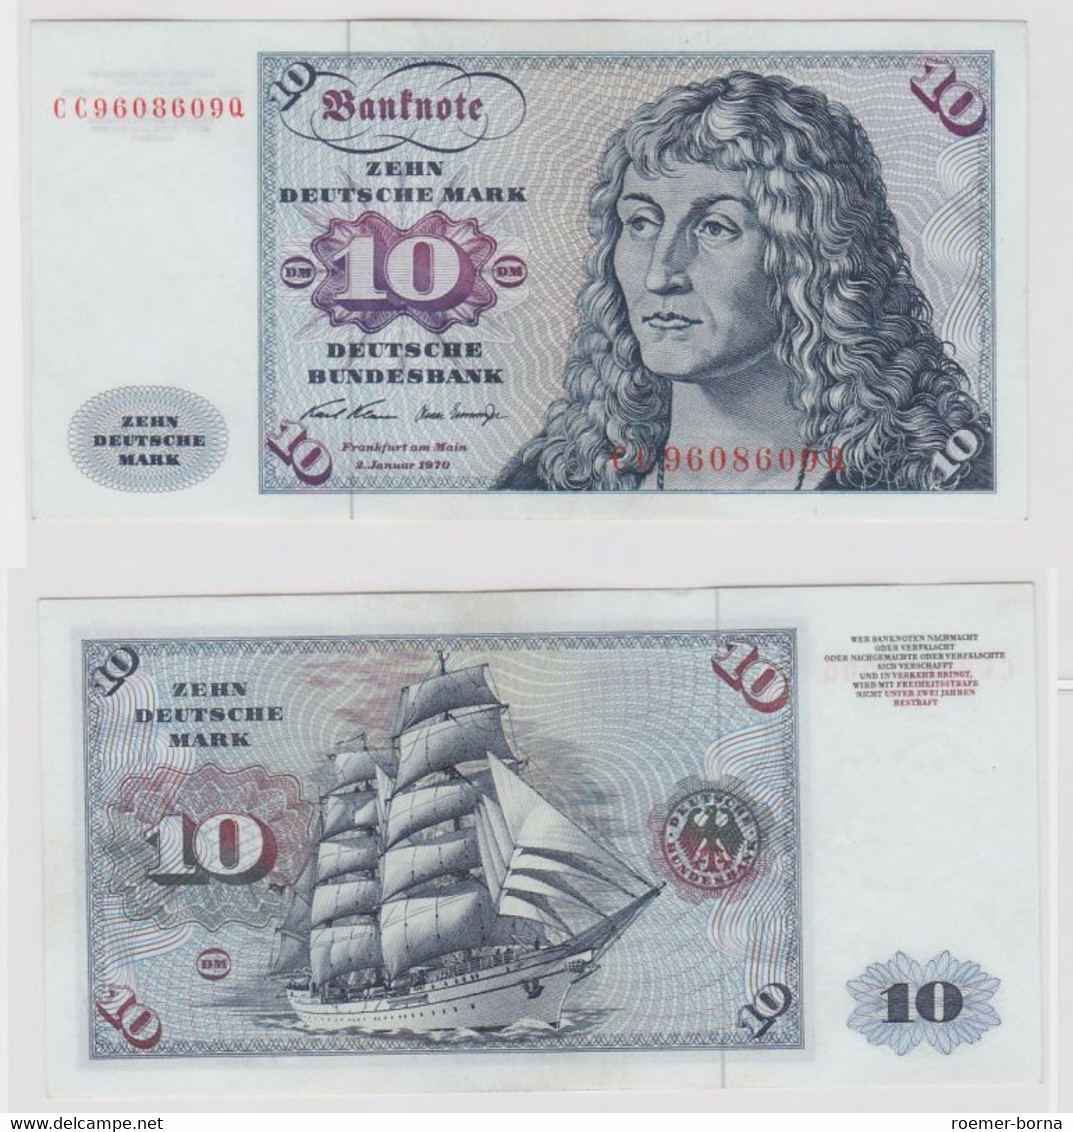 T147488 Banknote 10 DM Deutsche Mark Ro. 270a Schein 2.Jan. 1970 KN CC 9608609 Q - 10 DM